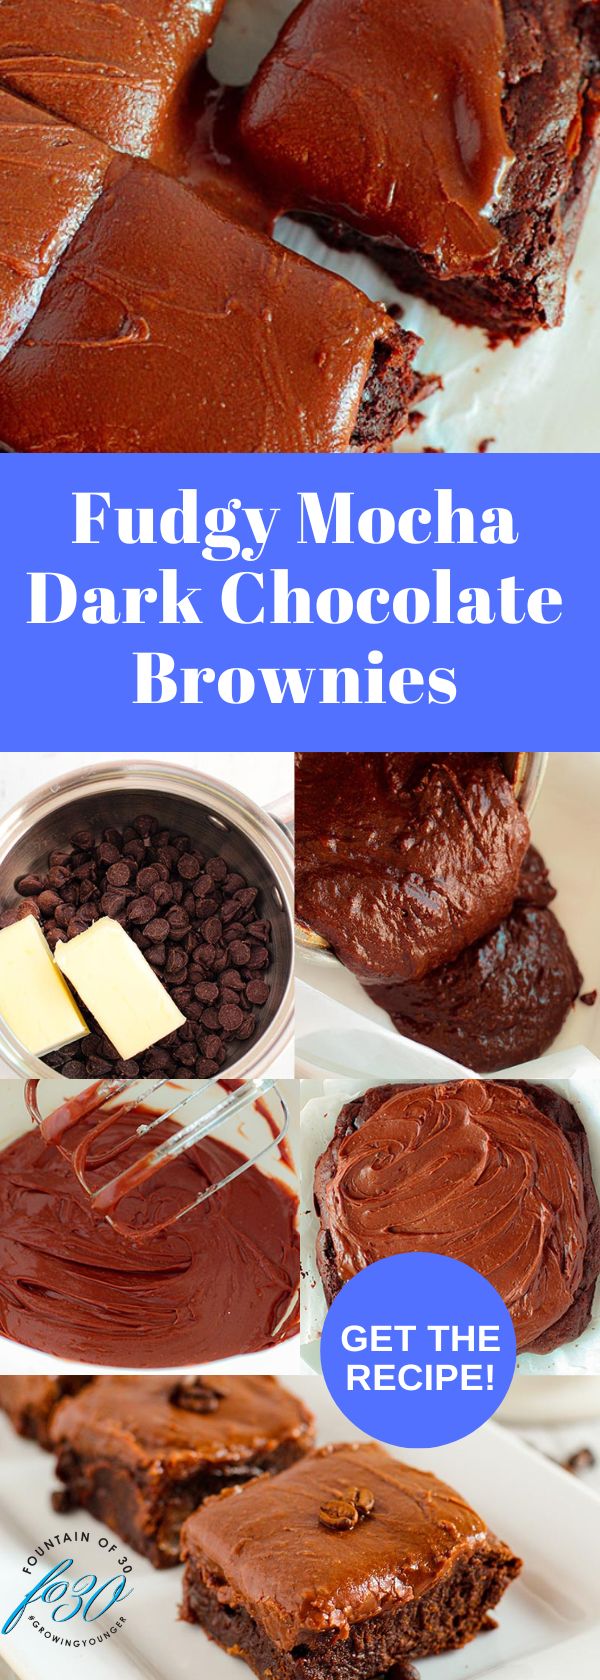 fudgy mocha dark chocolate brownies recipe fountainof30